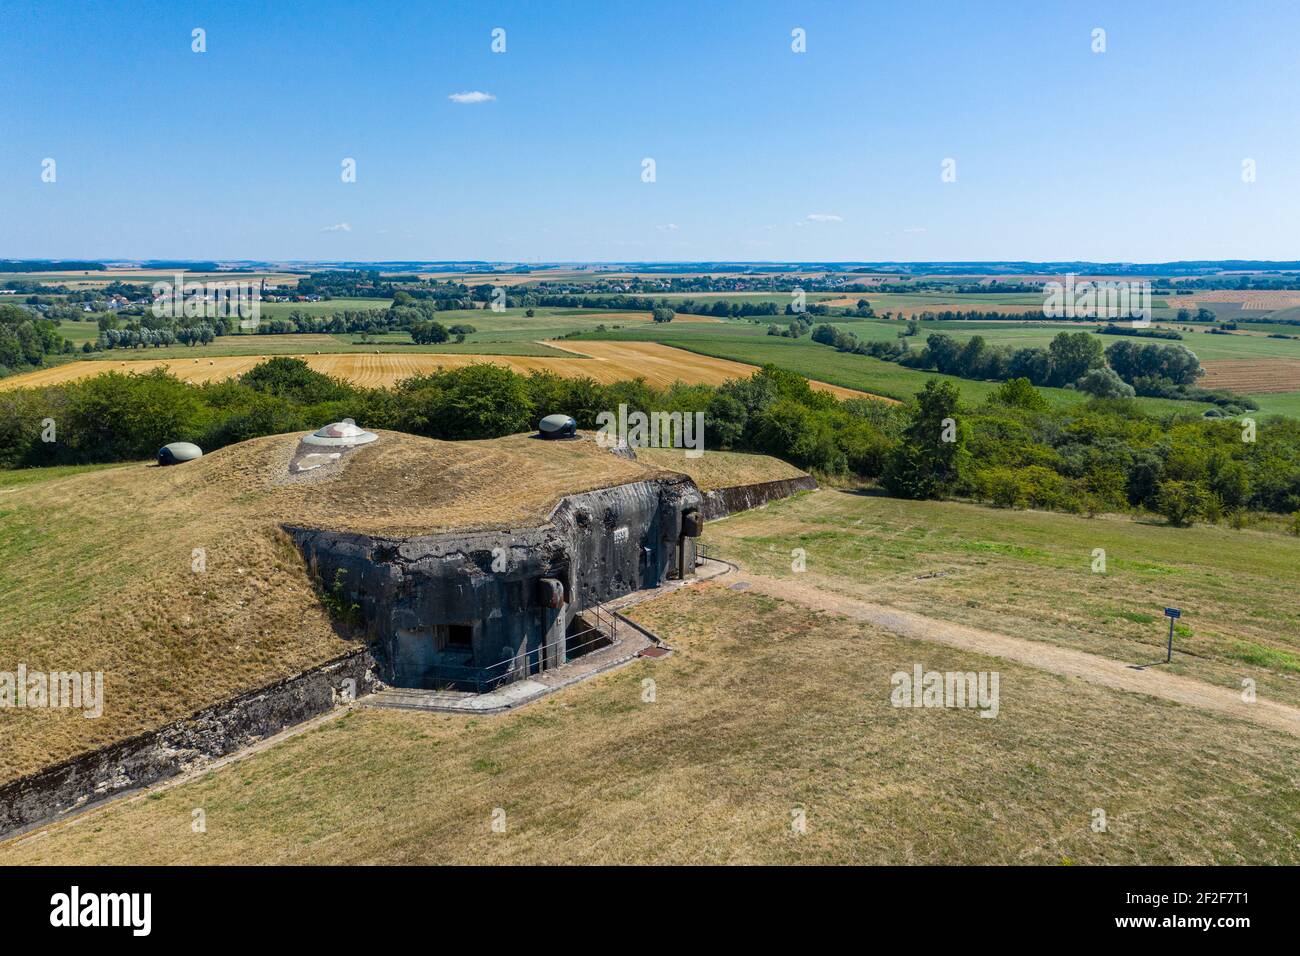 Luftaufnahme von Fort Casso militärische Festung. Kleiner Betonbunker auch als Ouvrage Rohrbach bekannt, Teil der Maginot-Linie in Moselle, Frankreich. Stockfoto